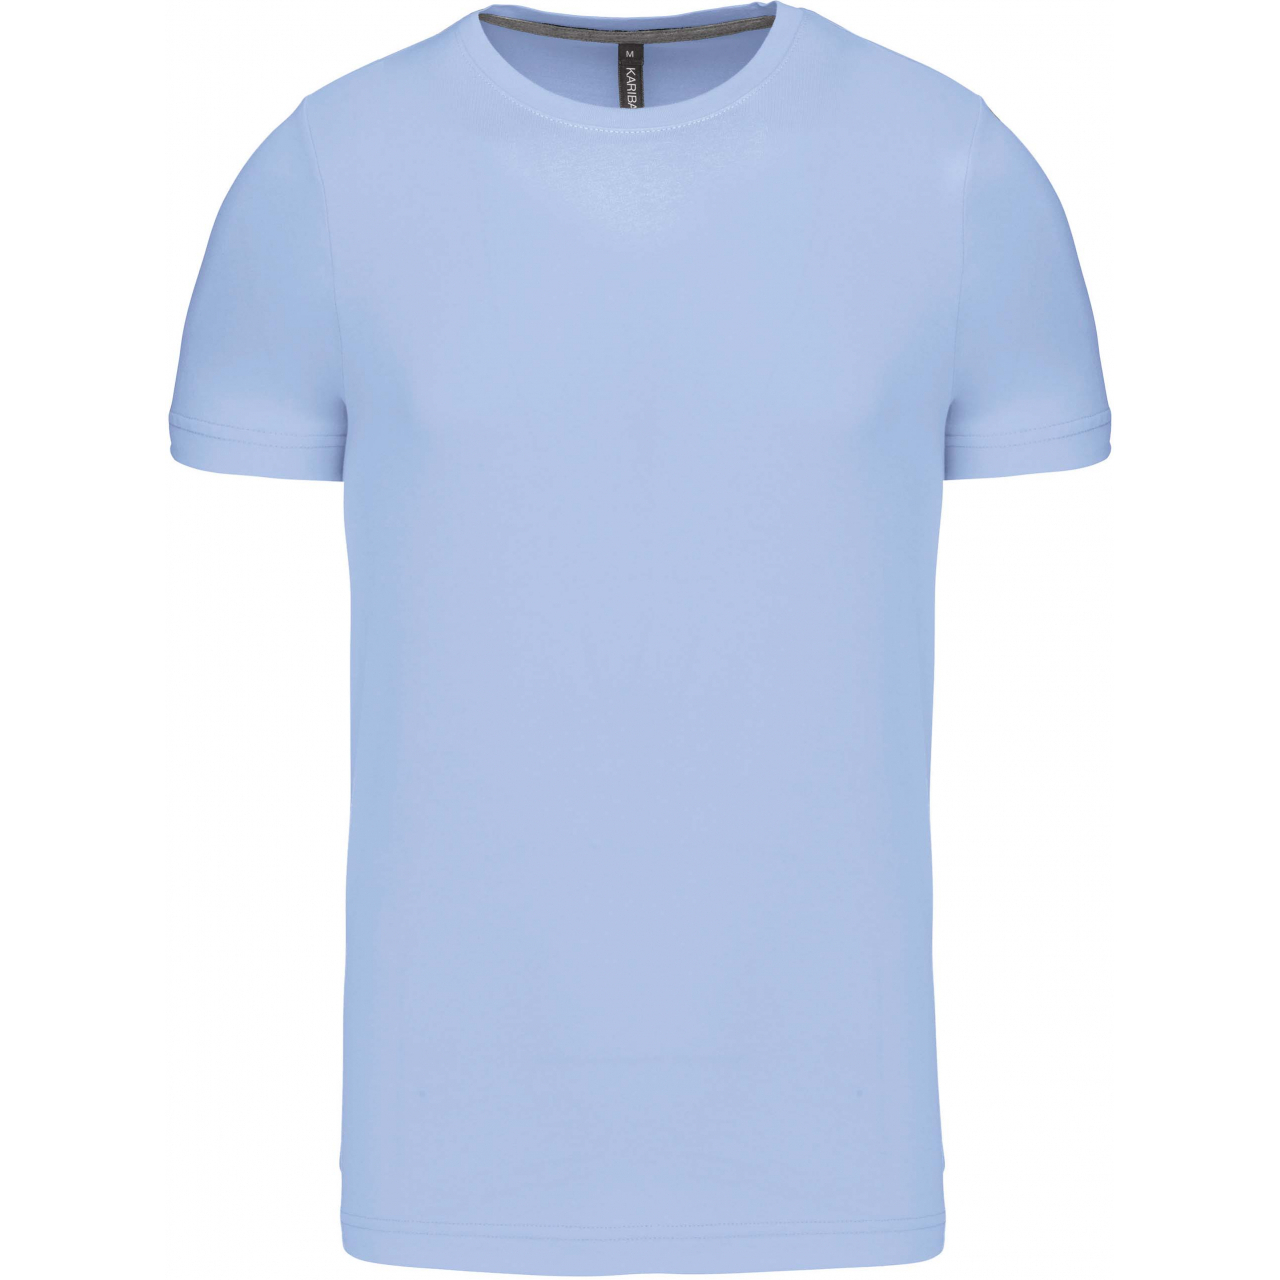 Pánské tričko Kariban krátký rukáv - světle modré, XXL